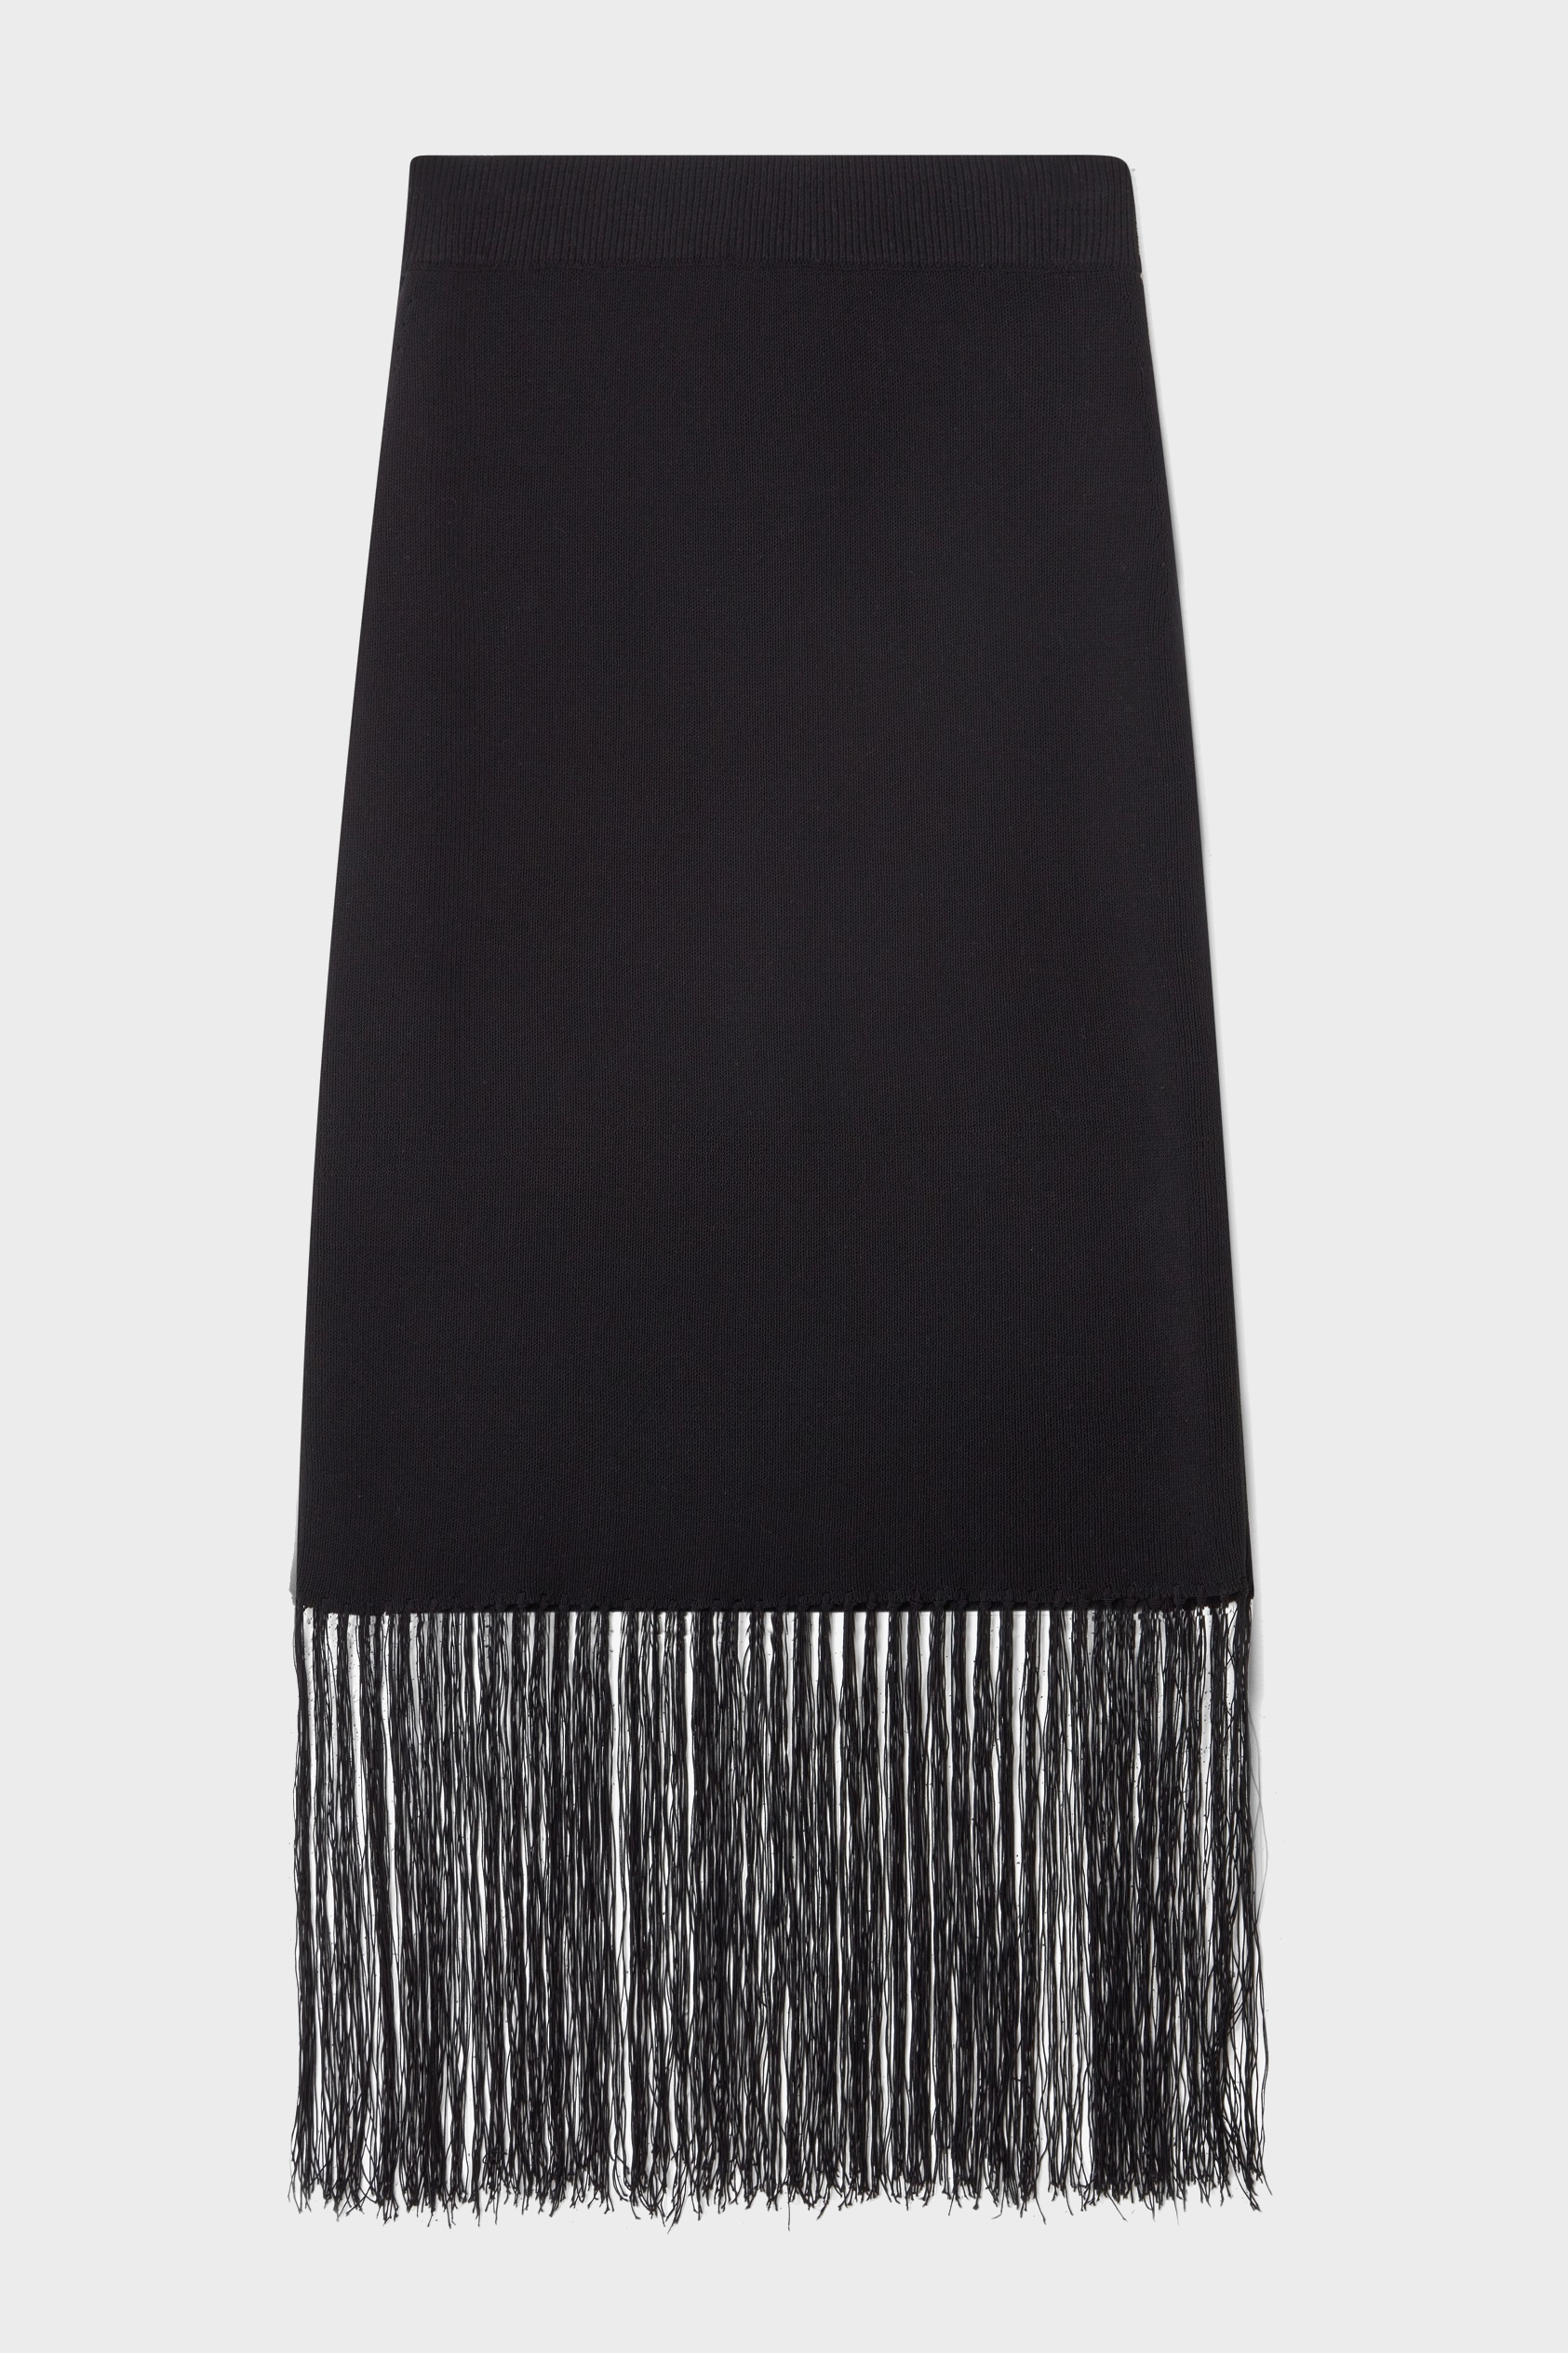 DAGMAR Fringe Skirt in Black S